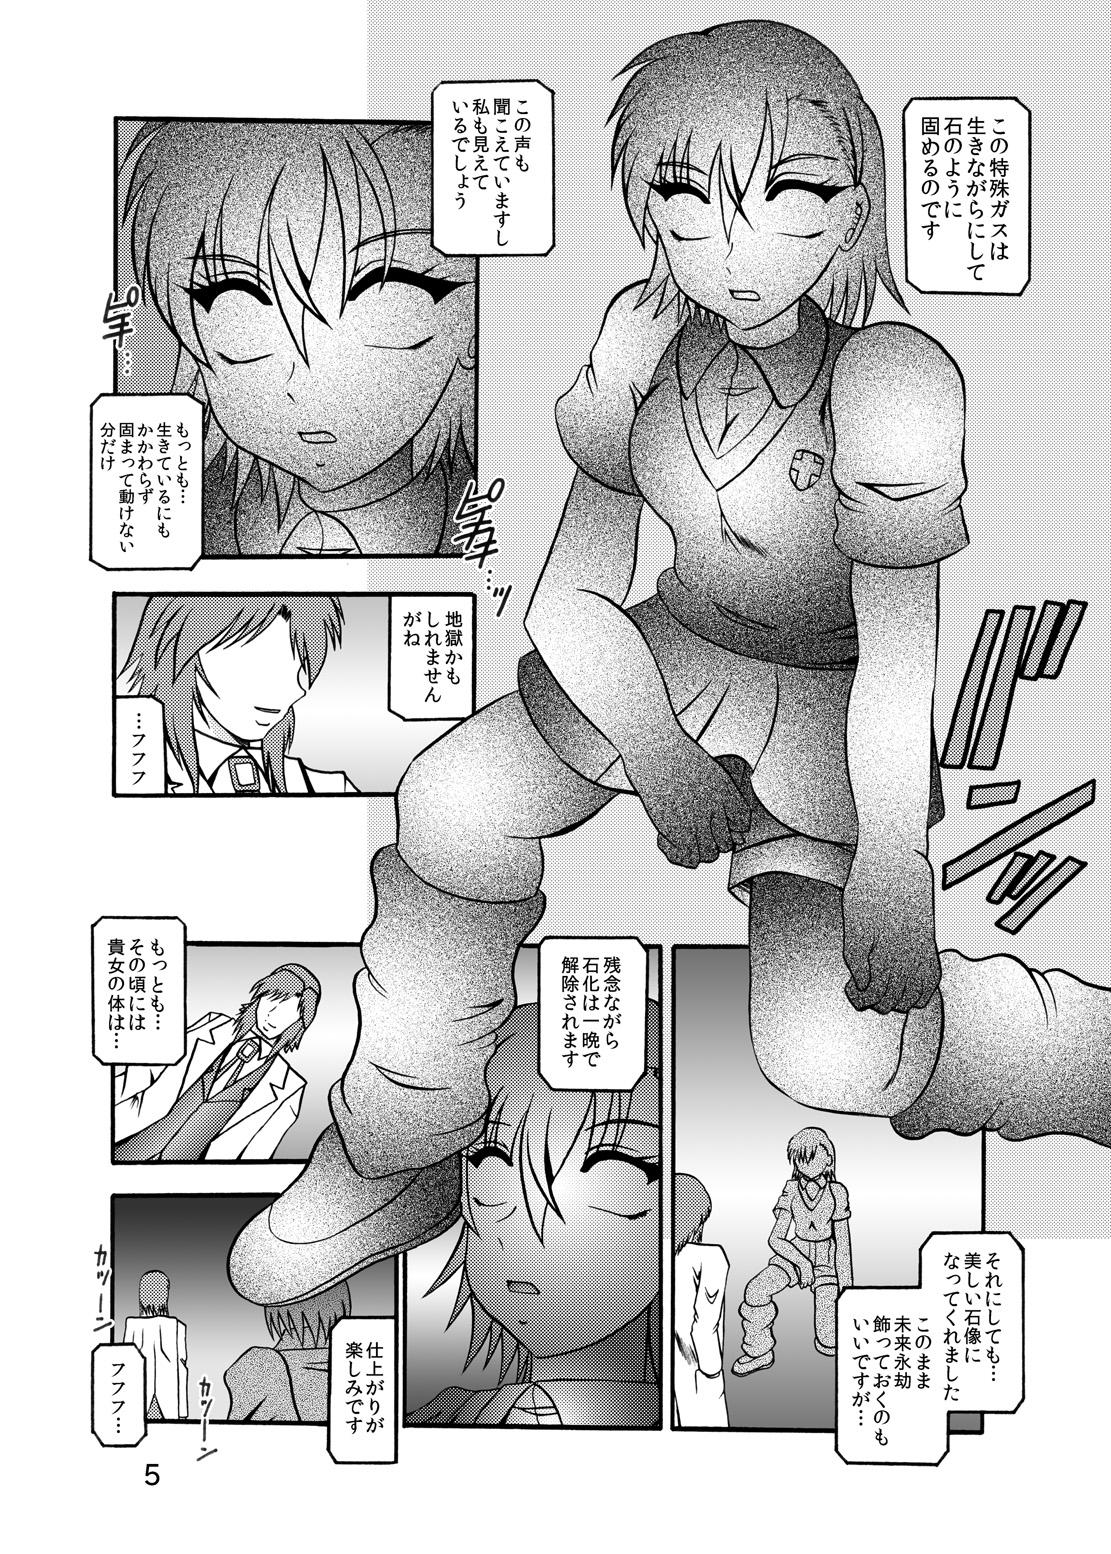 Long Inyoku Kaizou: Misaka Mikoto - Toaru kagaku no railgun Crossdresser - Page 3